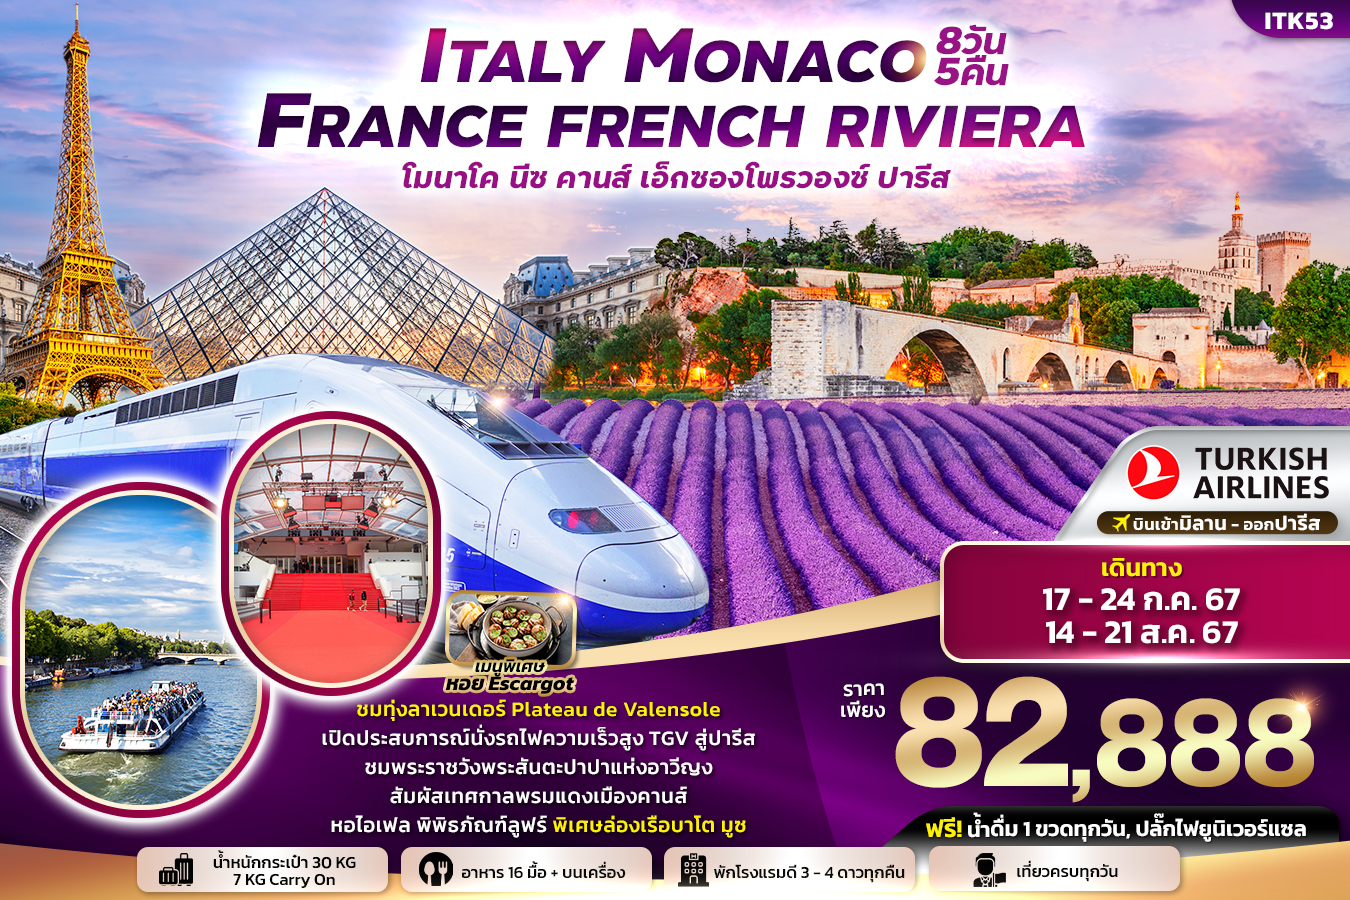 ทัวร์ยุโรป Italy Monaco France French Riviera